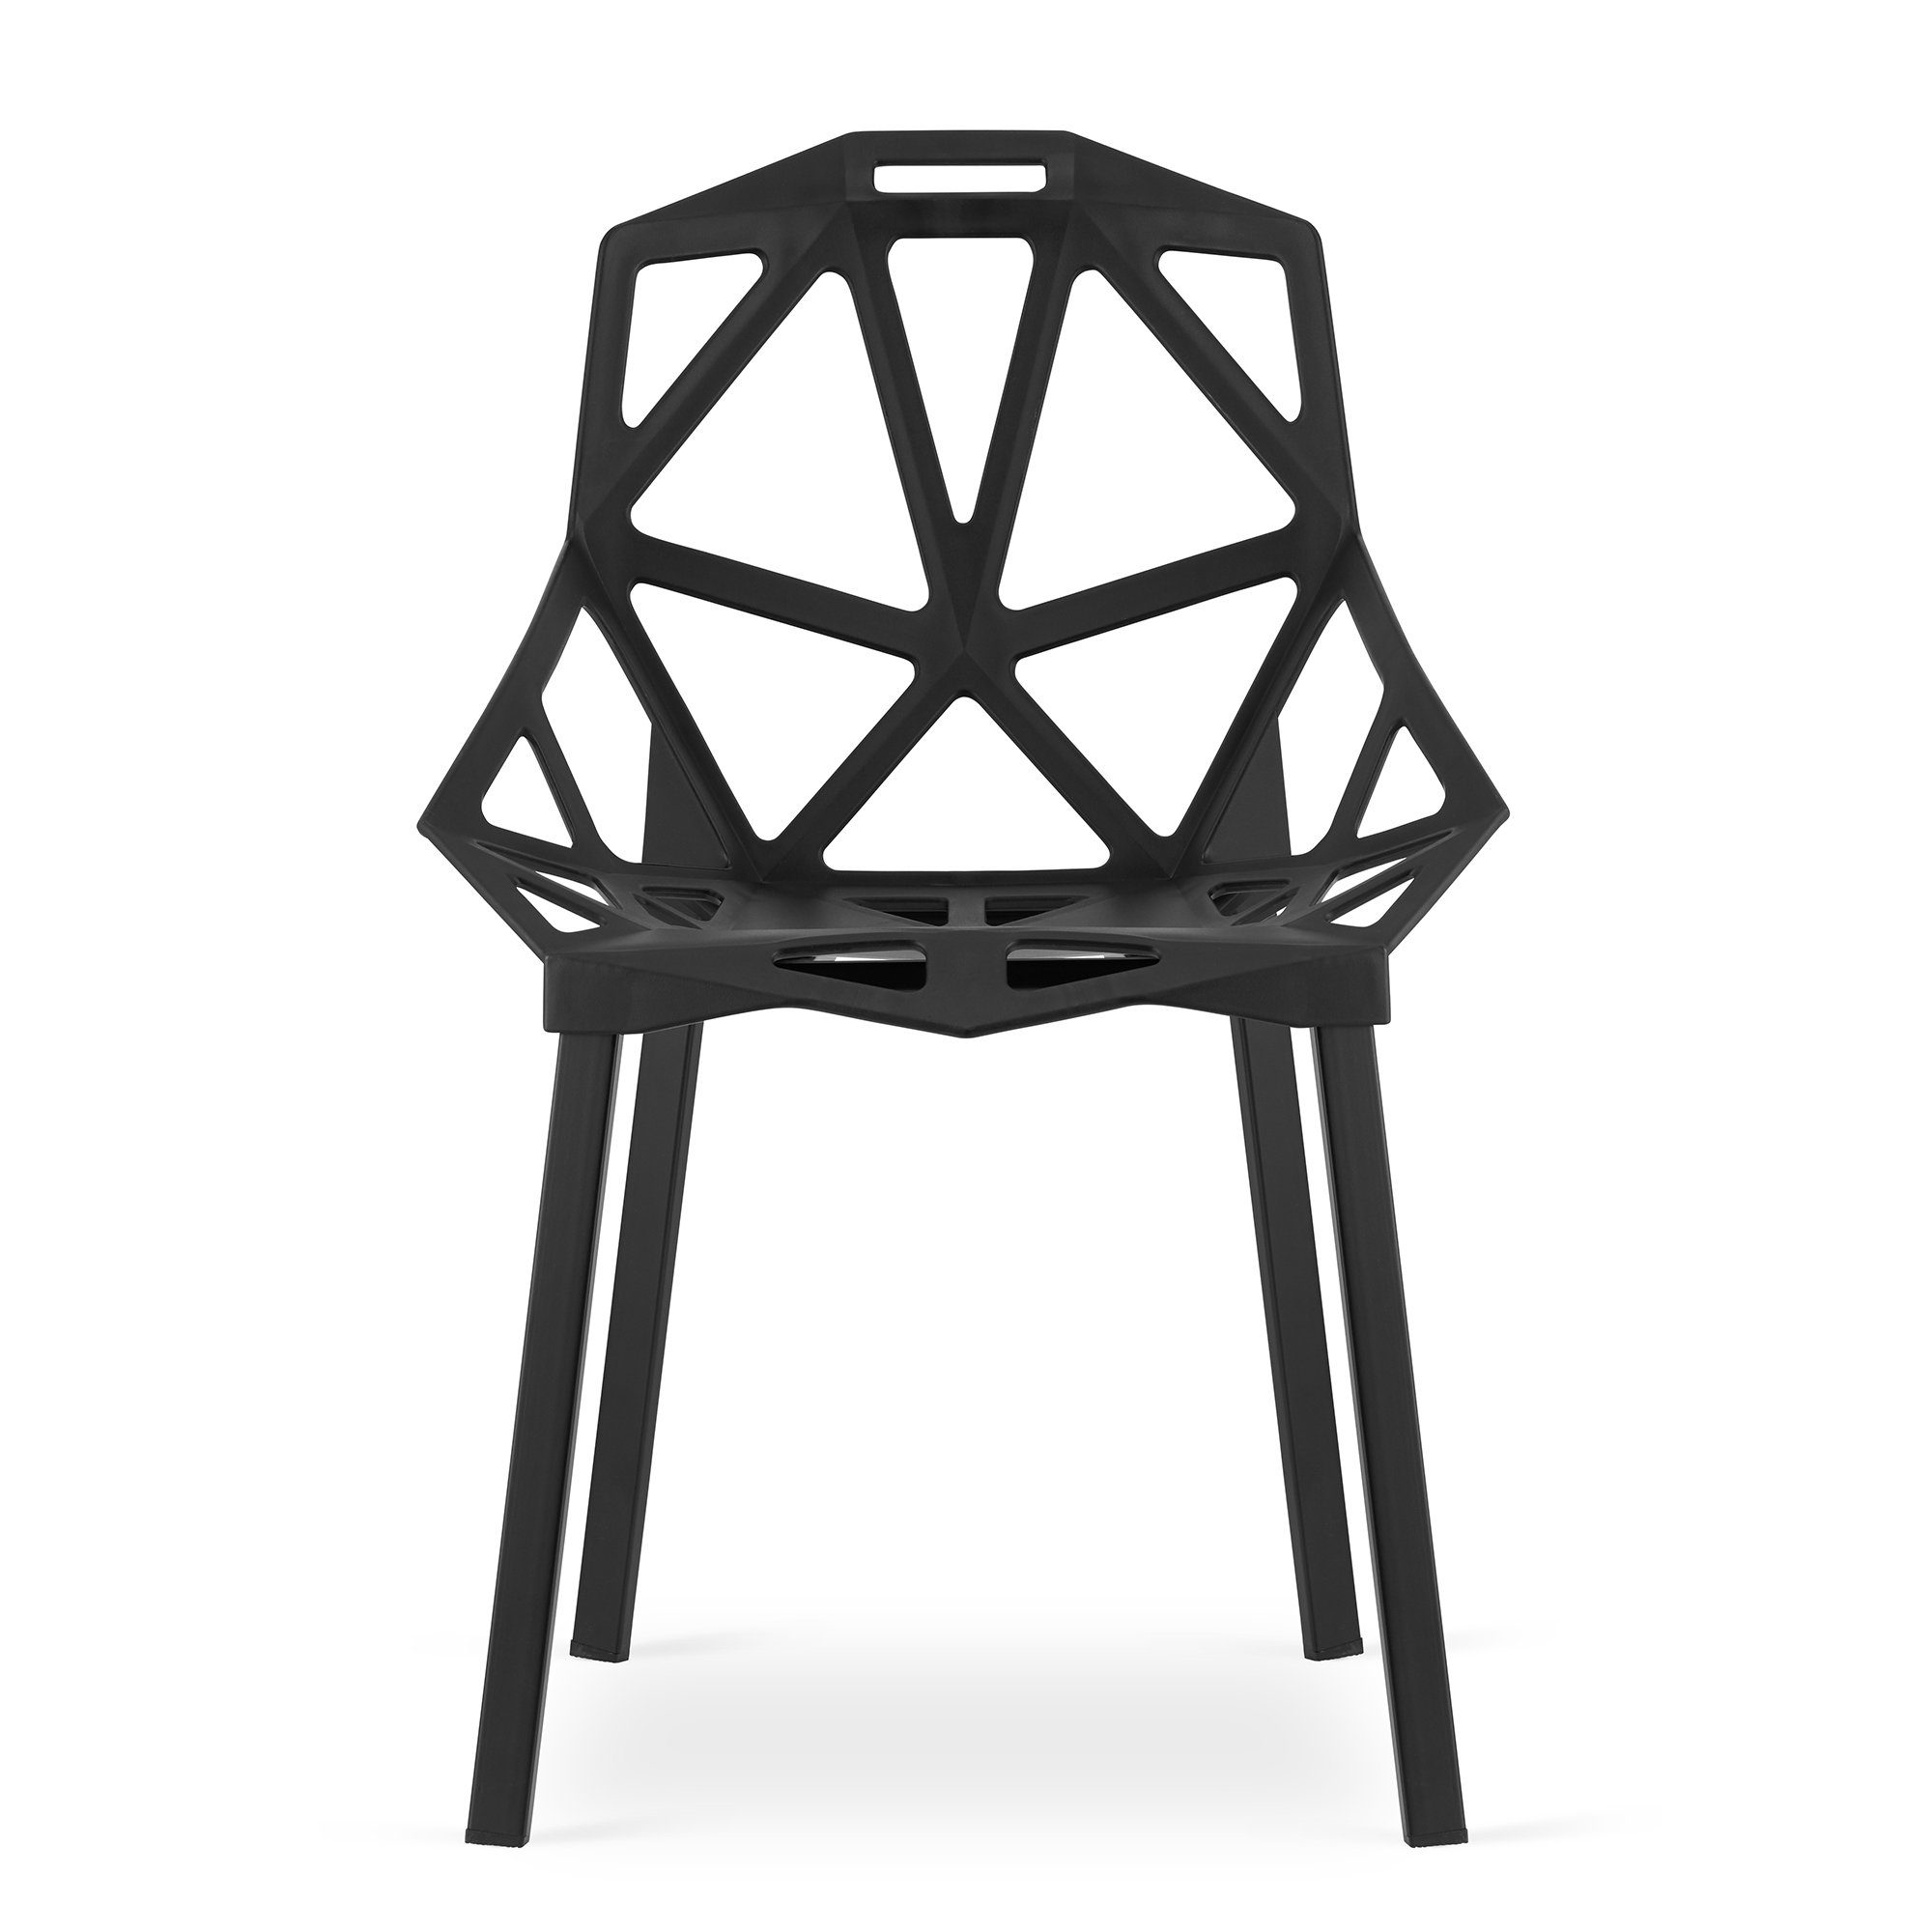 4er Schale Home aus schwarz, Collective aus Metall Stuhl Esszimmerstuhl 4x Füße Set Esszimmerstuhl Wohnzimmerstuhl, Gartenstuhl Kunststoff,